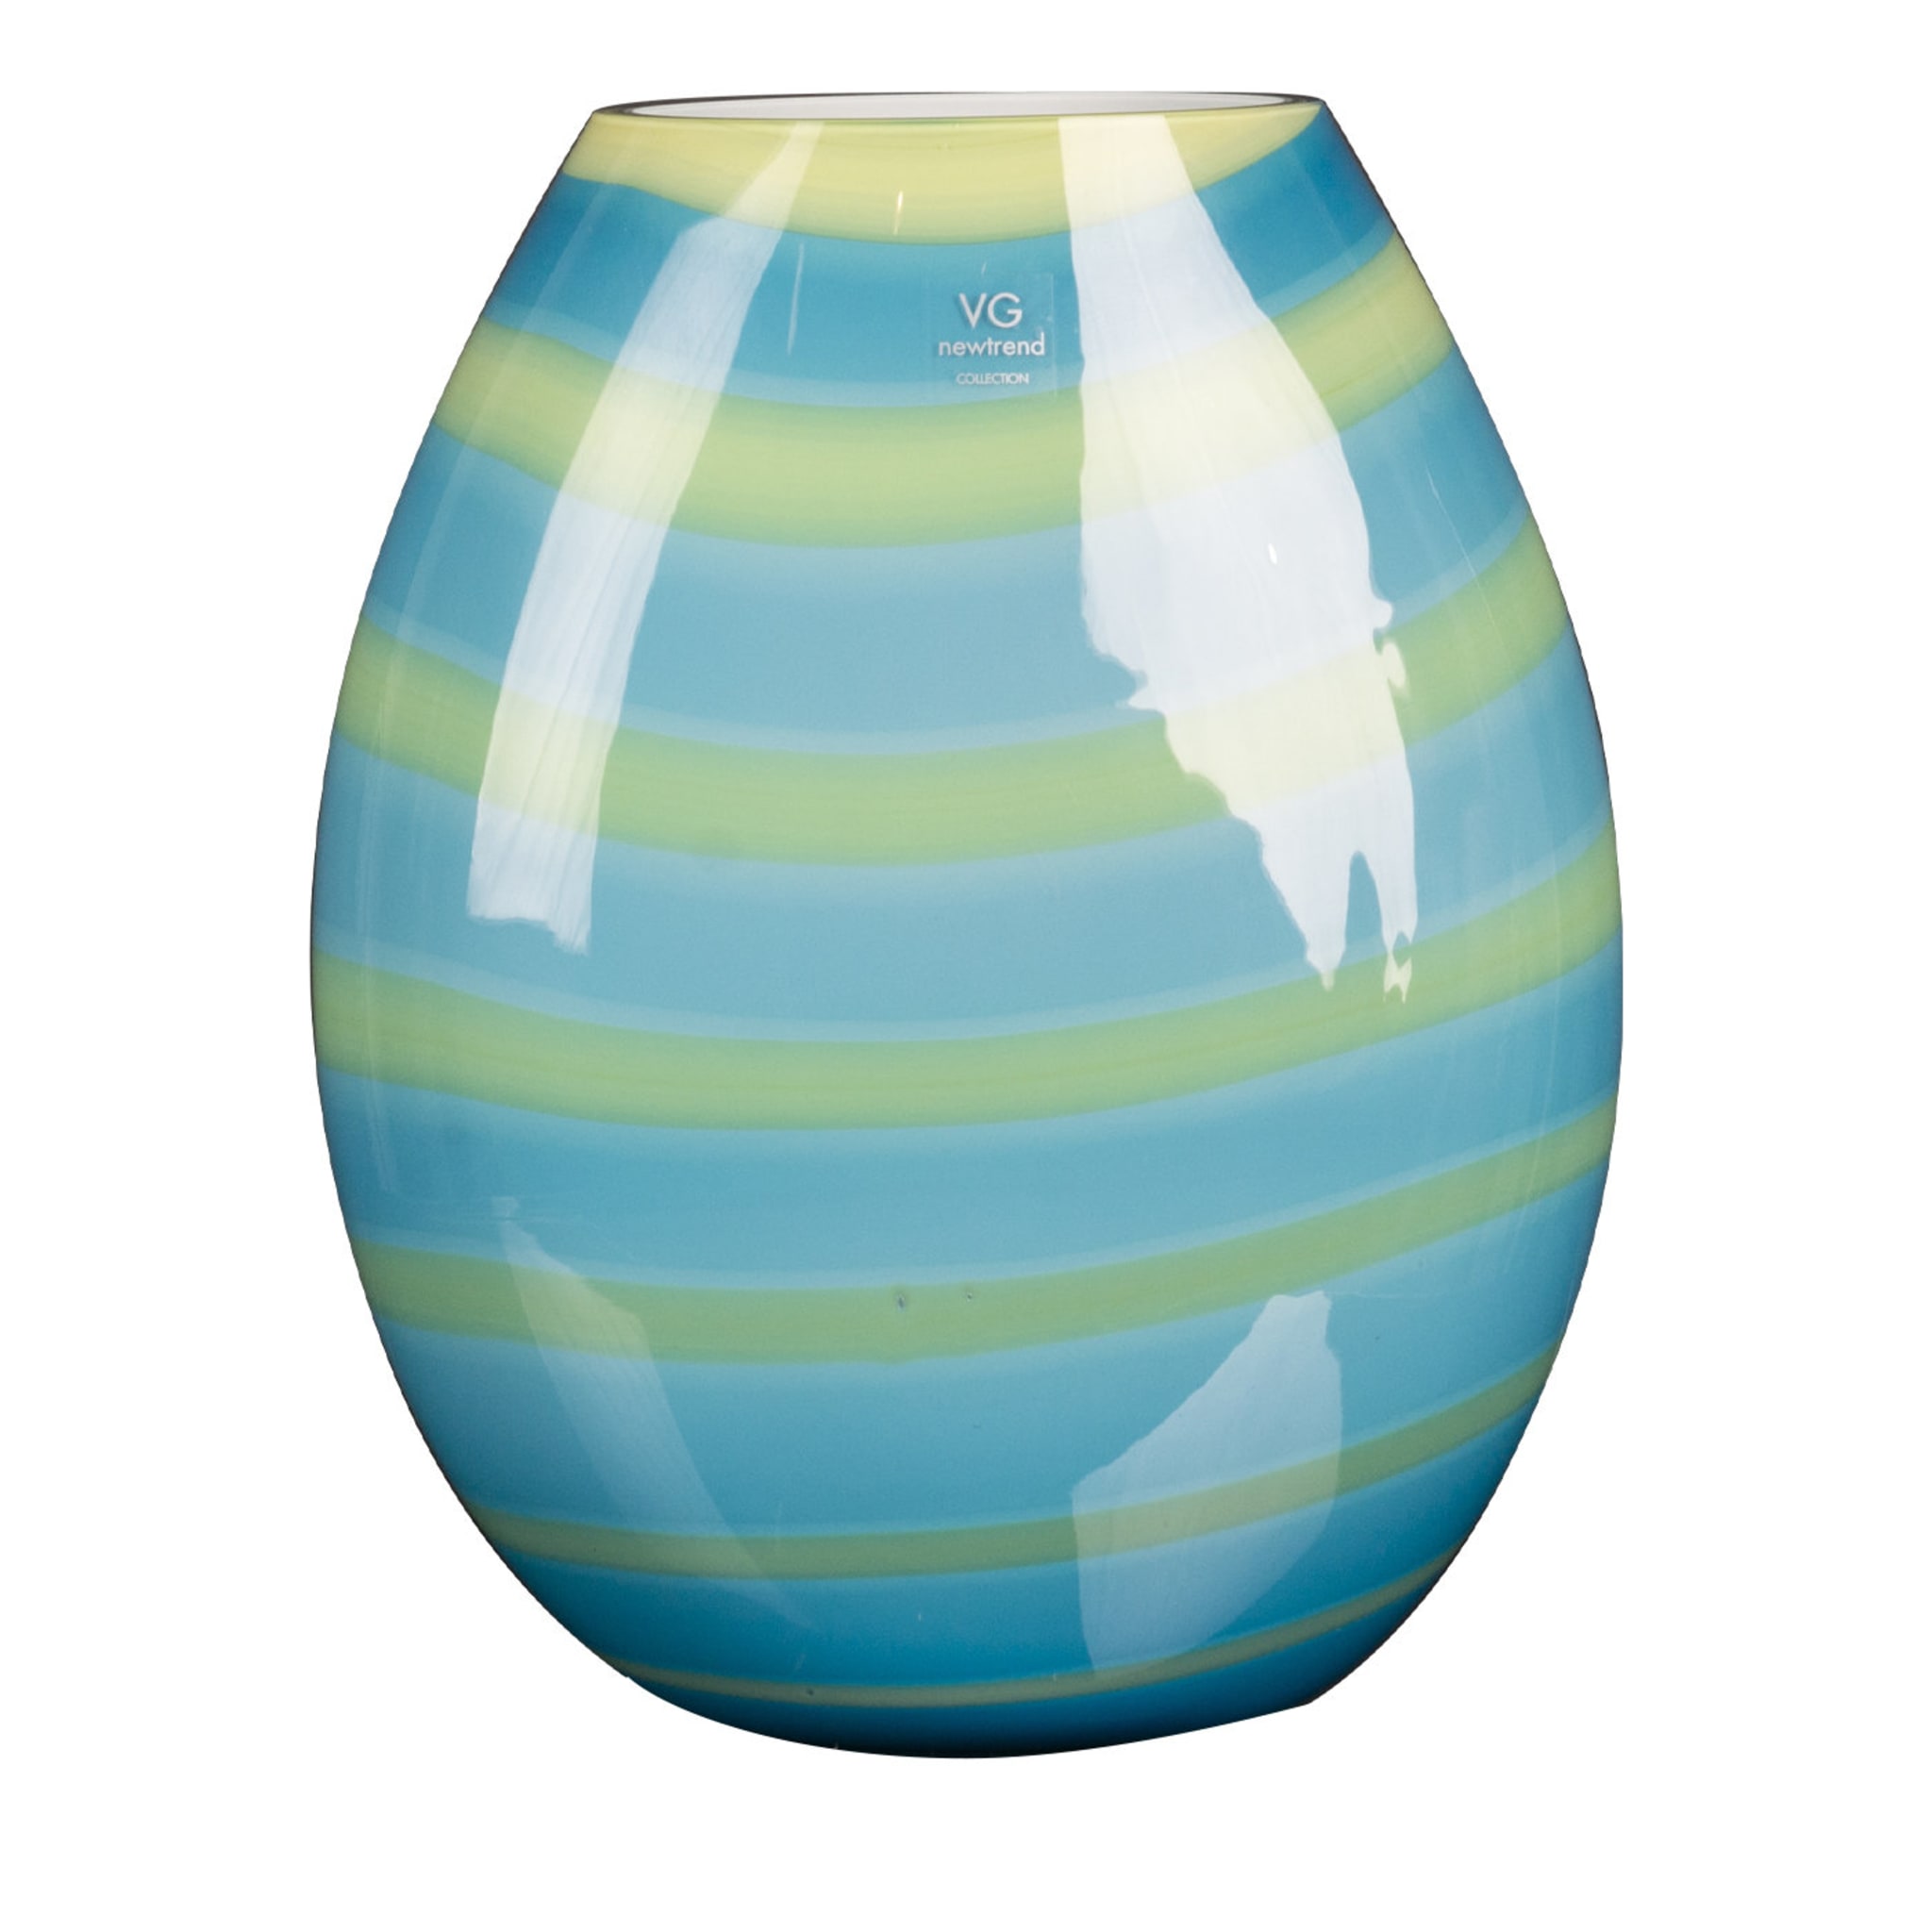 Unterseeische Vase Medium Oval - Hauptansicht